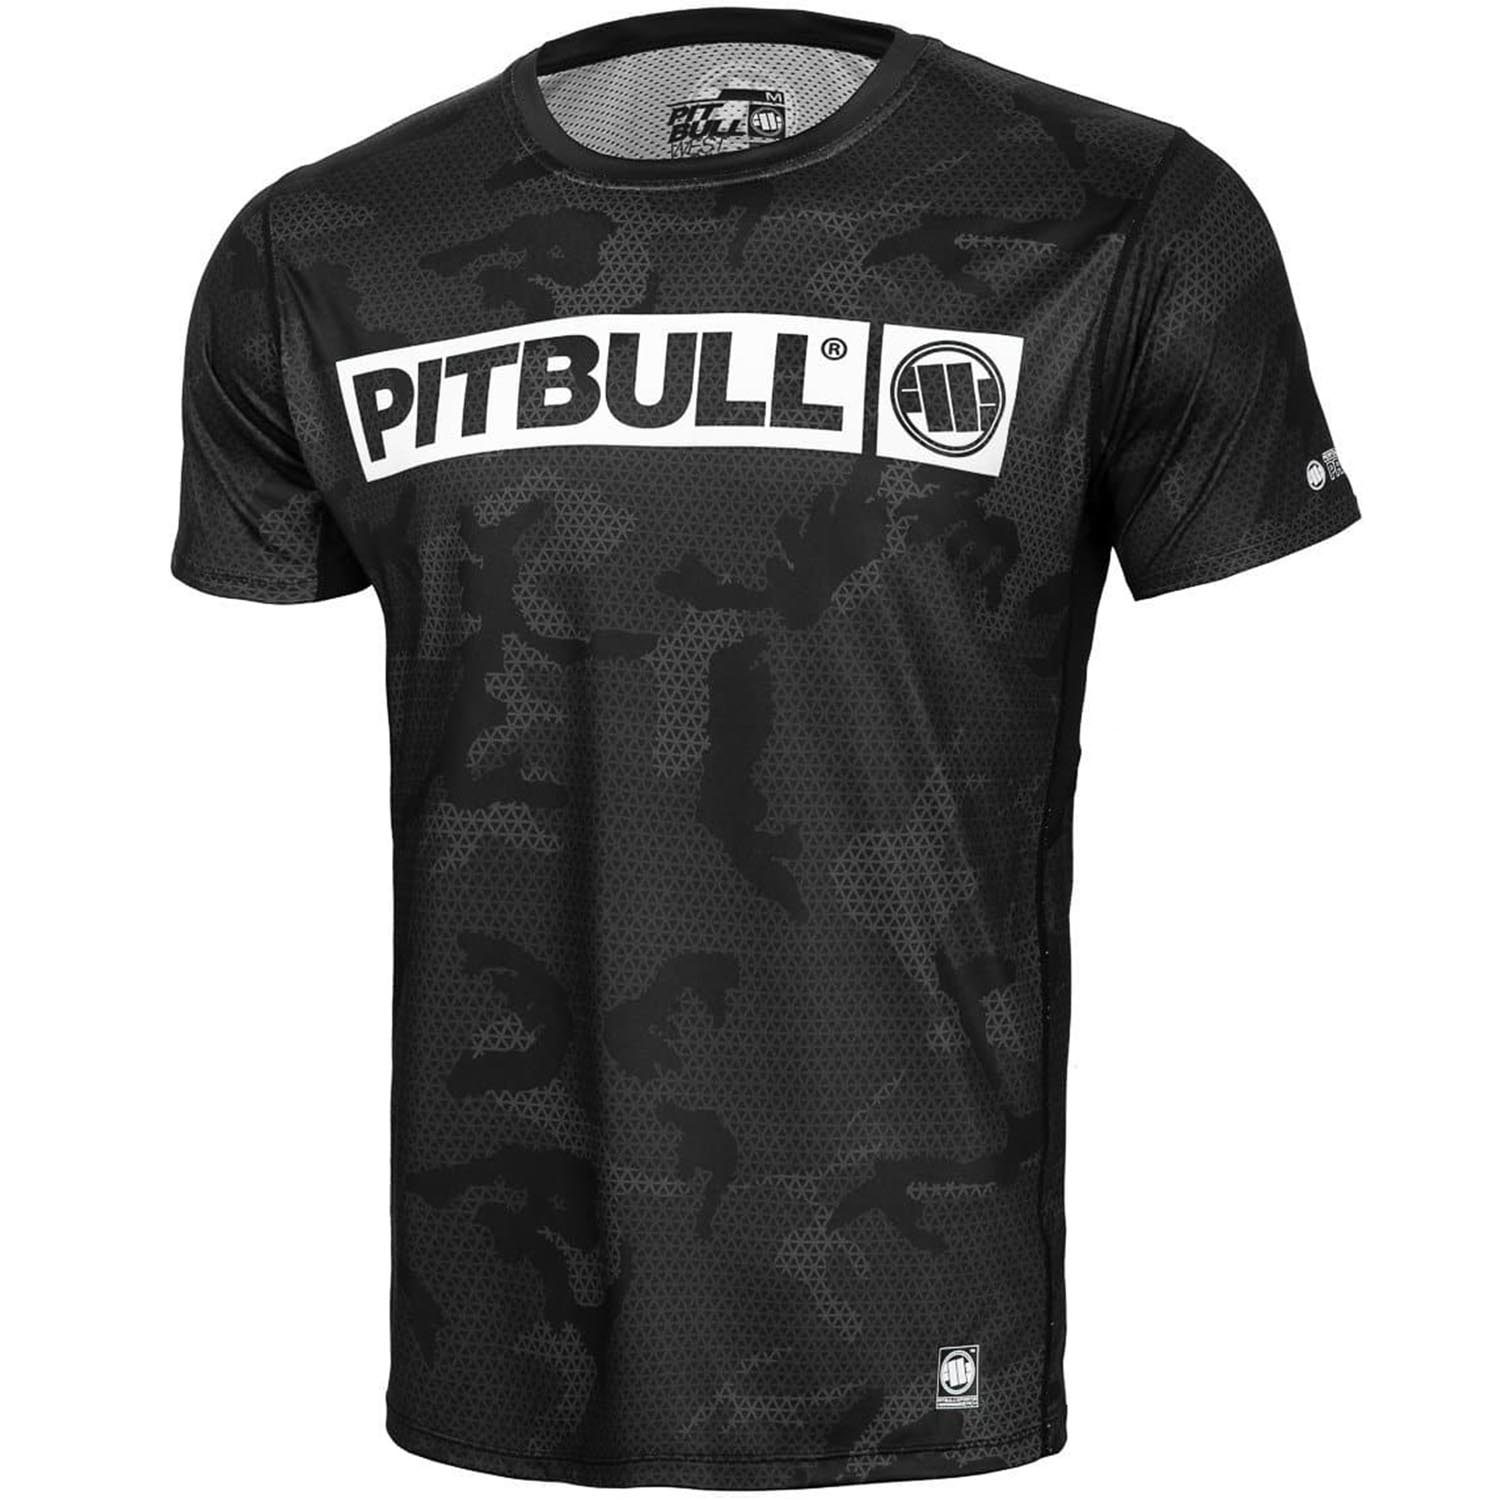 Pit Bull West Coast Fitness Shirt, Mesh Net Hilltop, camo-schwarz, XXL